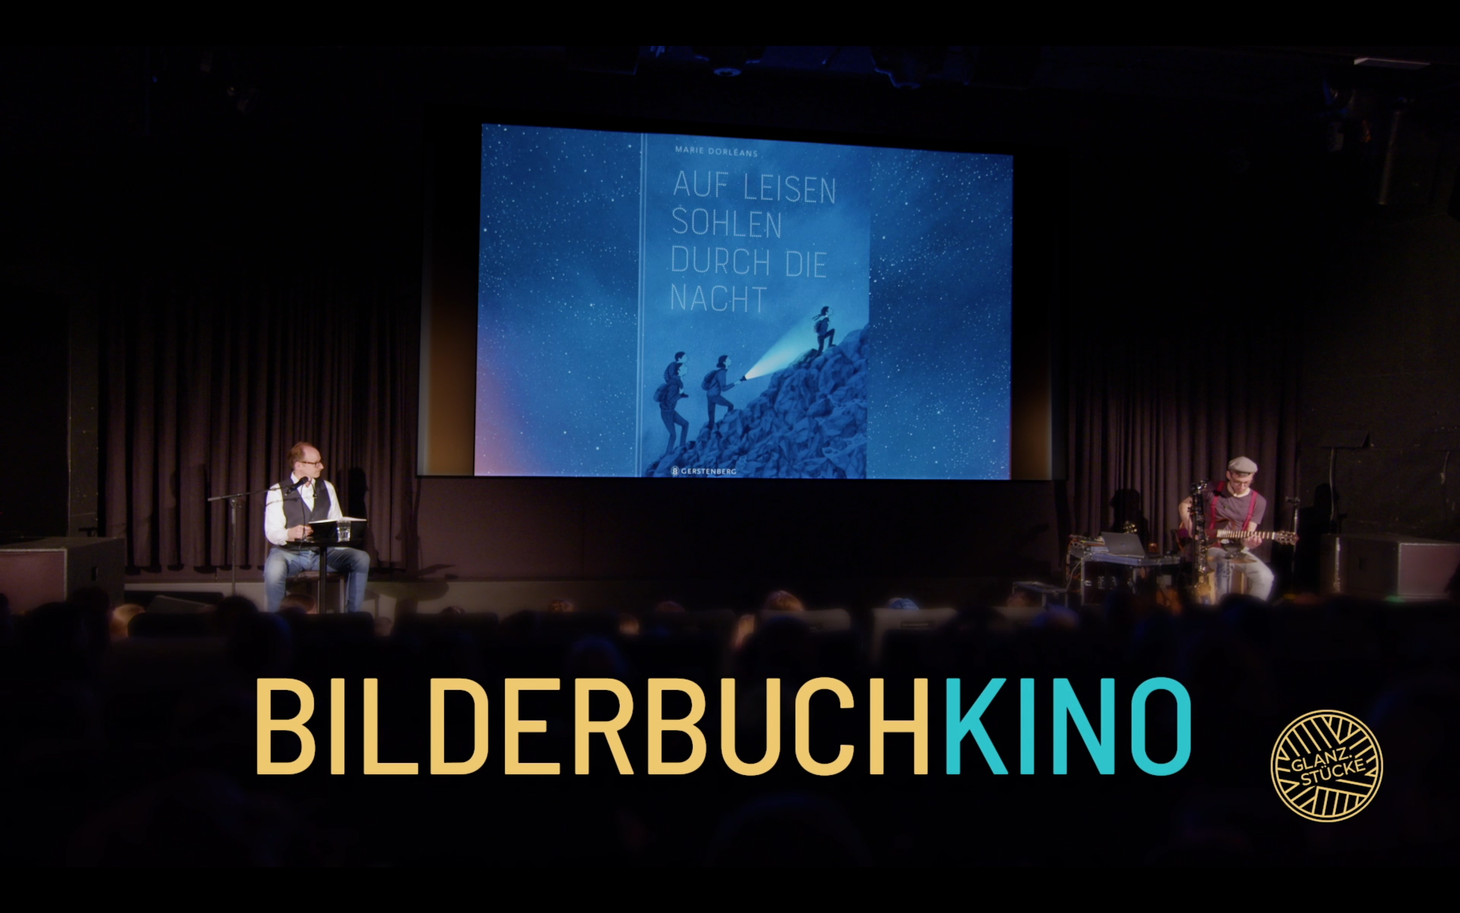 Trailer zum fünfjährigen Bestehen von Glanz.Stücke - Bilderbuchkino!